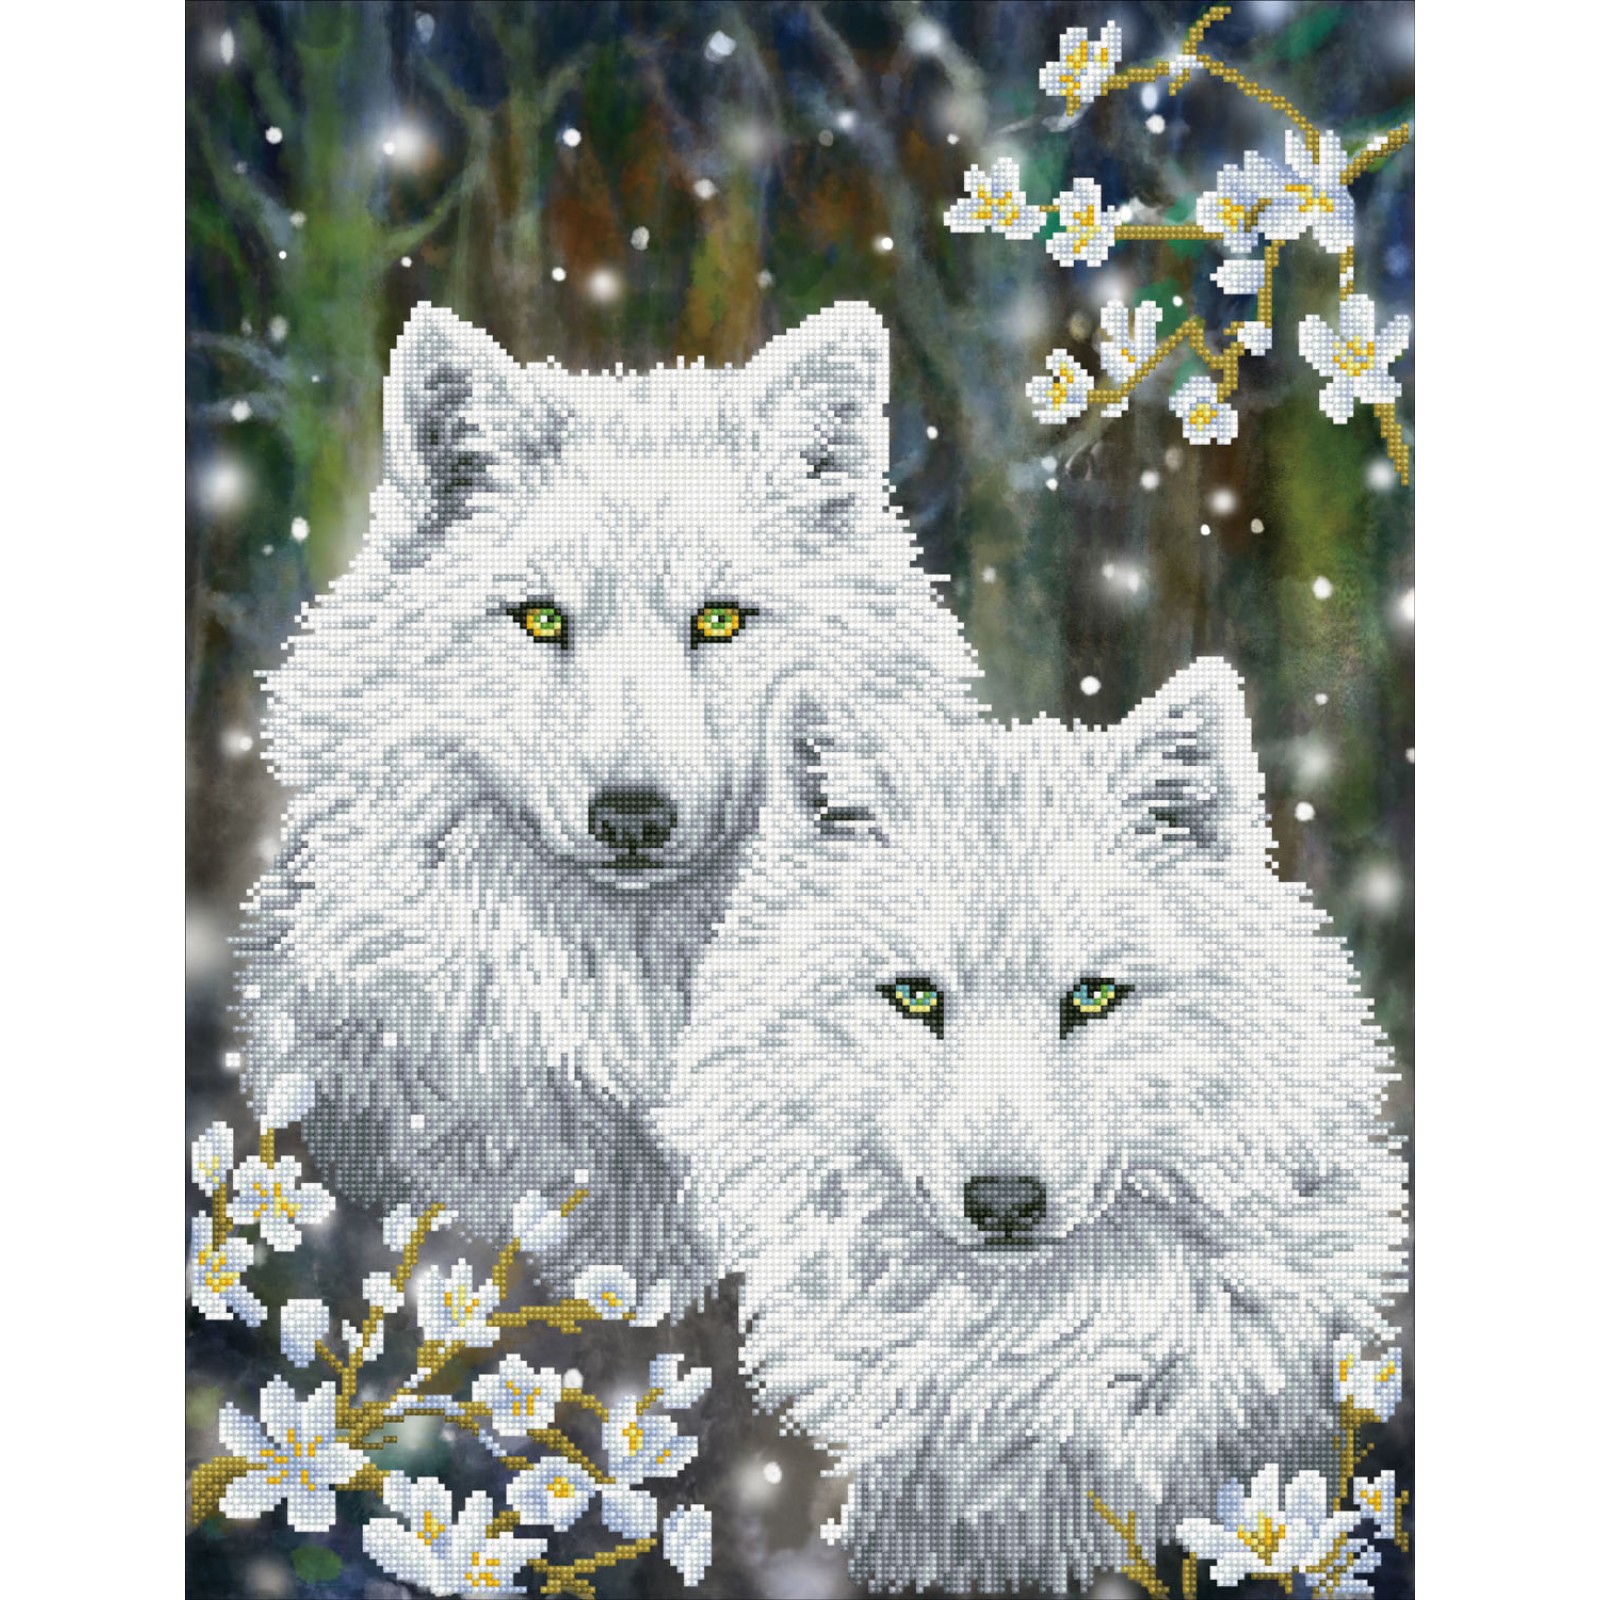 Full Large Diamond Painting kit - Northwestern wolves – Hibah-Diamond  painting art studio